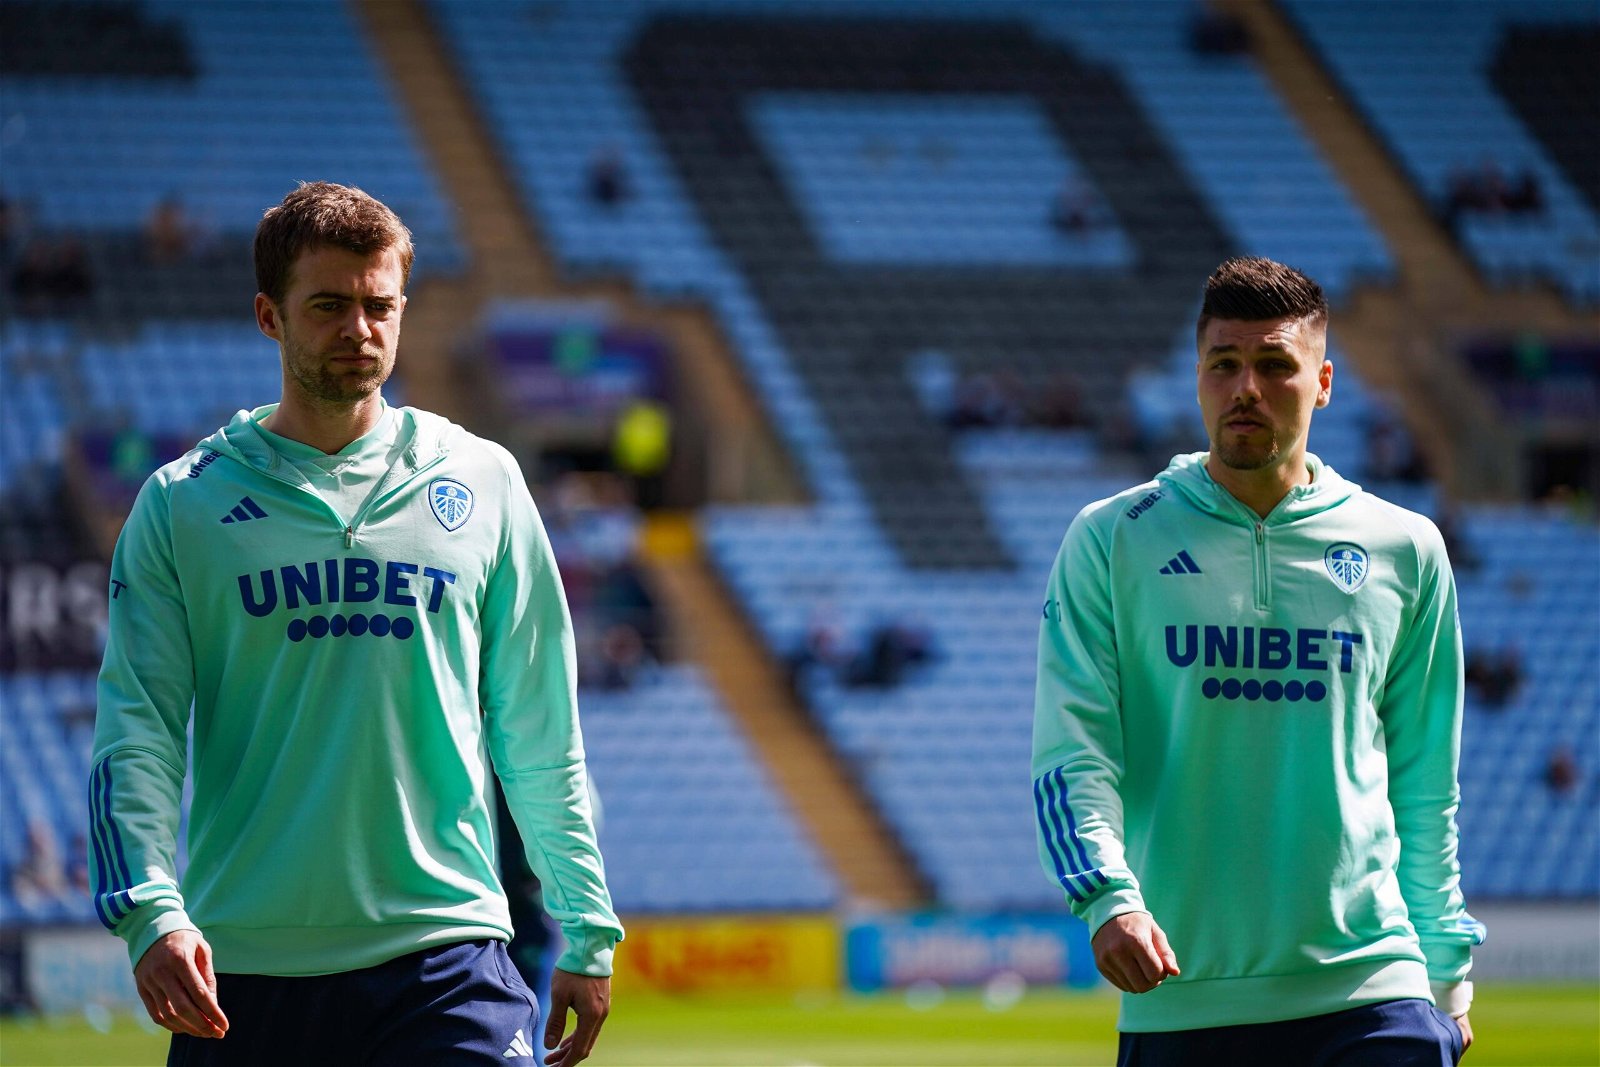 Leeds United striker's Patrick Bamford and Joel Piroe.